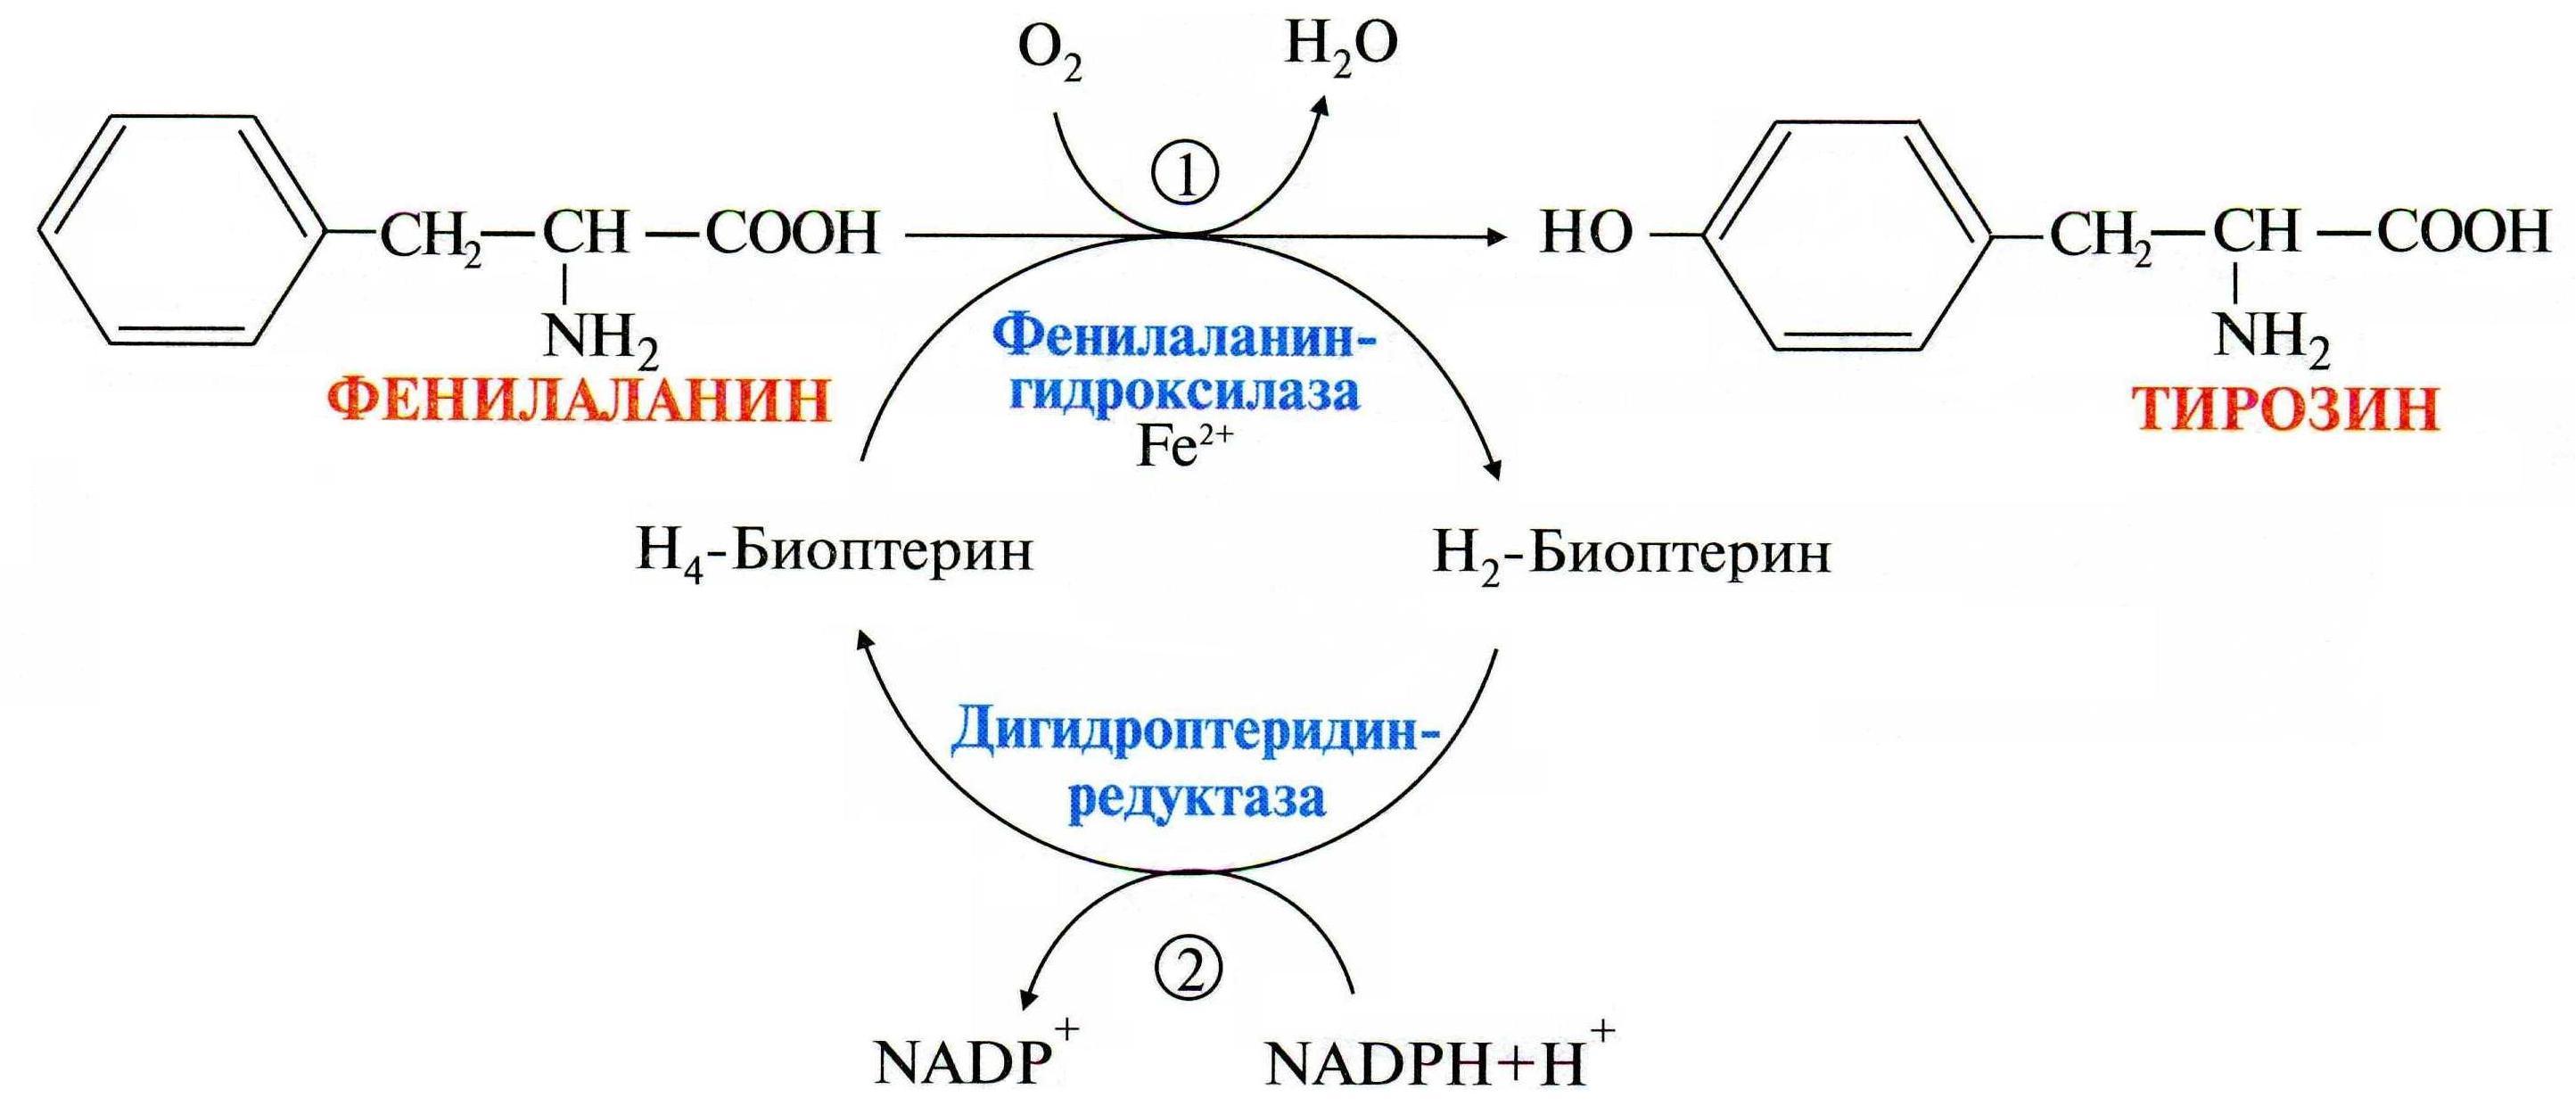 Синтез тирозина. Образование тирозина из фенилаланина реакция. Реакция превращения фенилаланина в тирозин. Схема превращения фенилаланина и тирозина. Реакция синтеза тирозина.